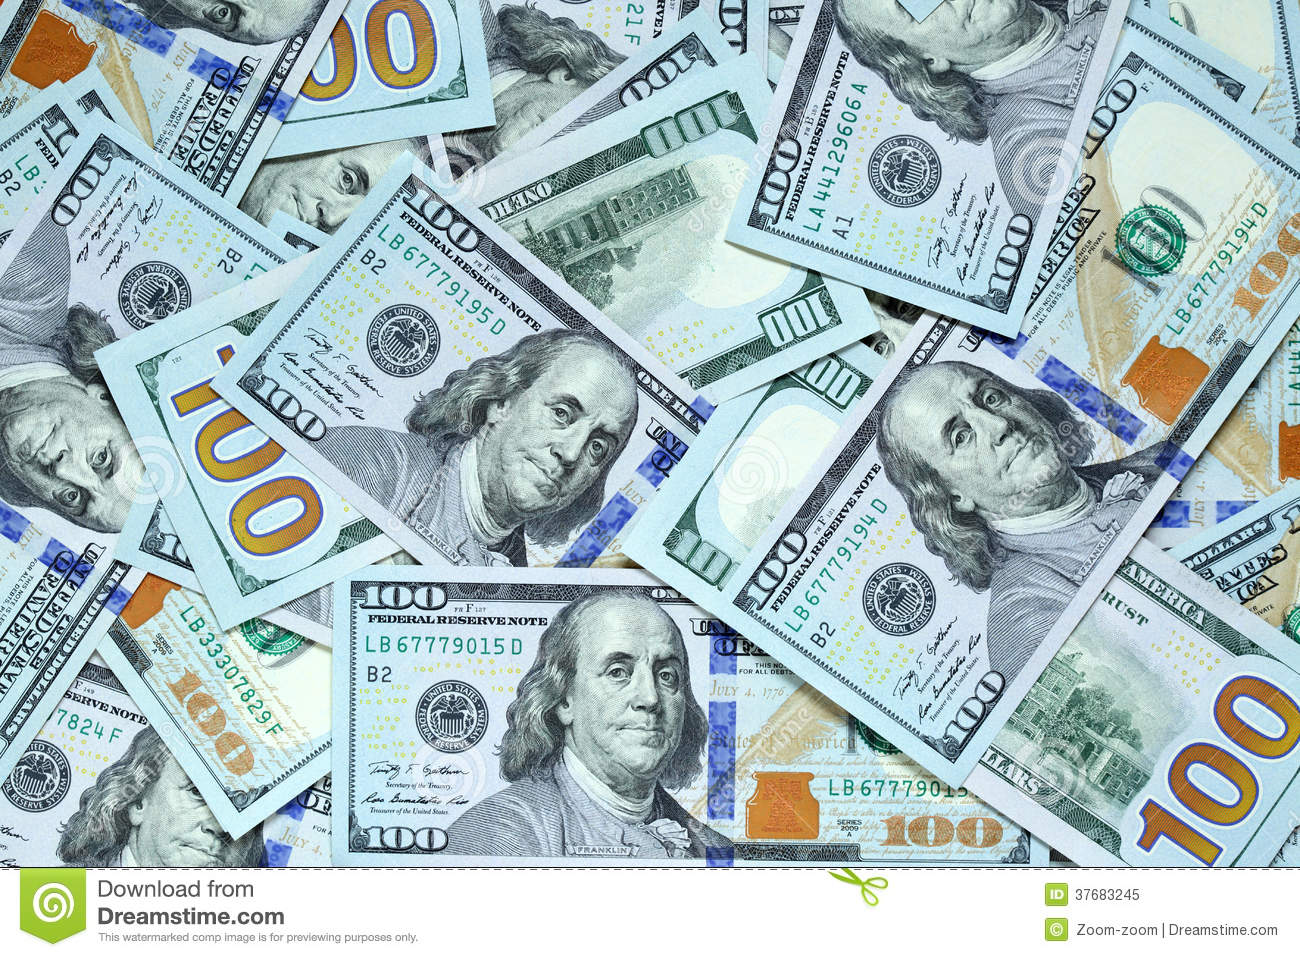 fondo de pantalla de billete de 100 dólares,dinero,efectivo,billete de banco,dólar,manejo de dinero